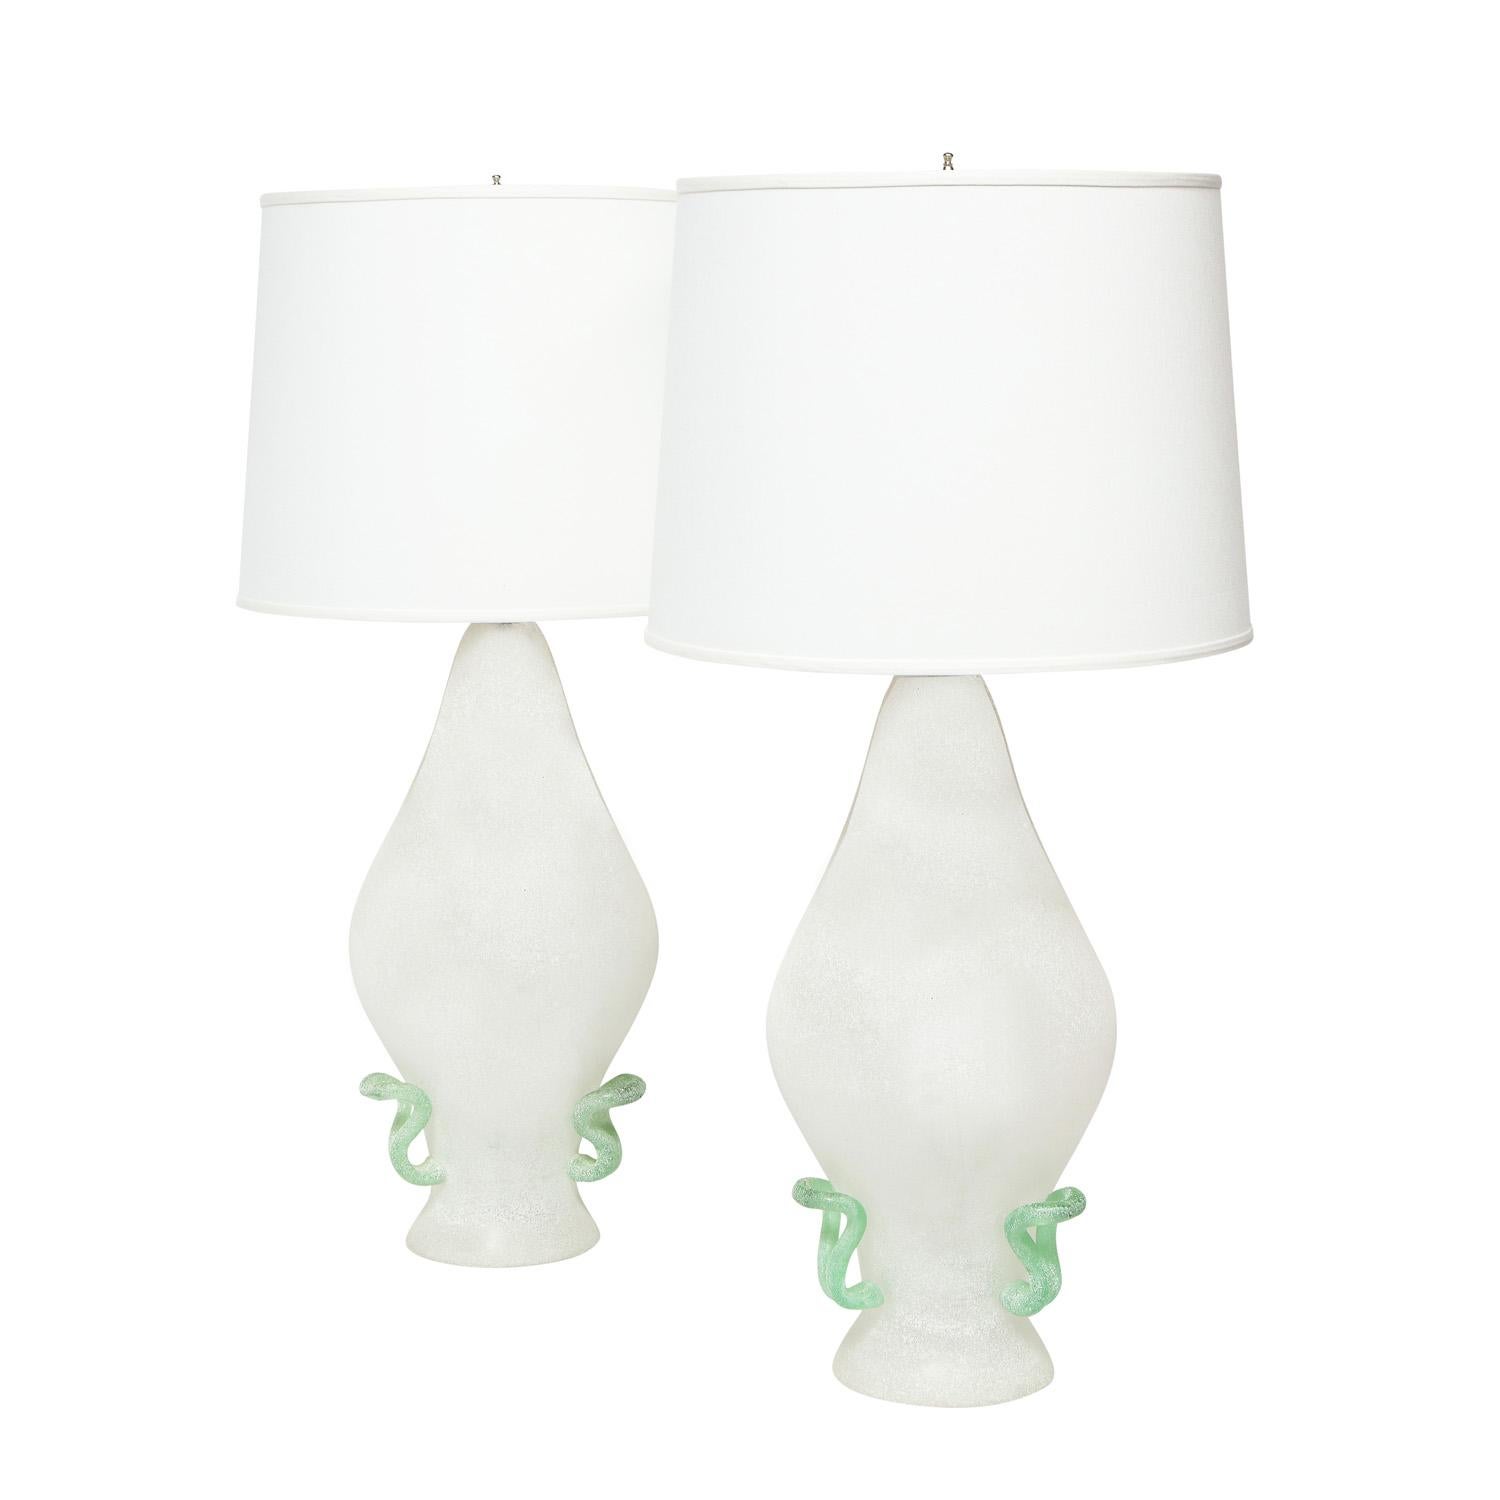 Zwei Tischlampen aus mundgeblasenem Glas mit weißem Scavo-Finish und grünen Akzenten, von Cenedese, Murano Italien, 1970er Jahre. Die Formen und Farben sind wunderschön.

Maße: Schirm-Durchmesser: 16 Zoll
Höhe des Schattens: 12 Zoll.